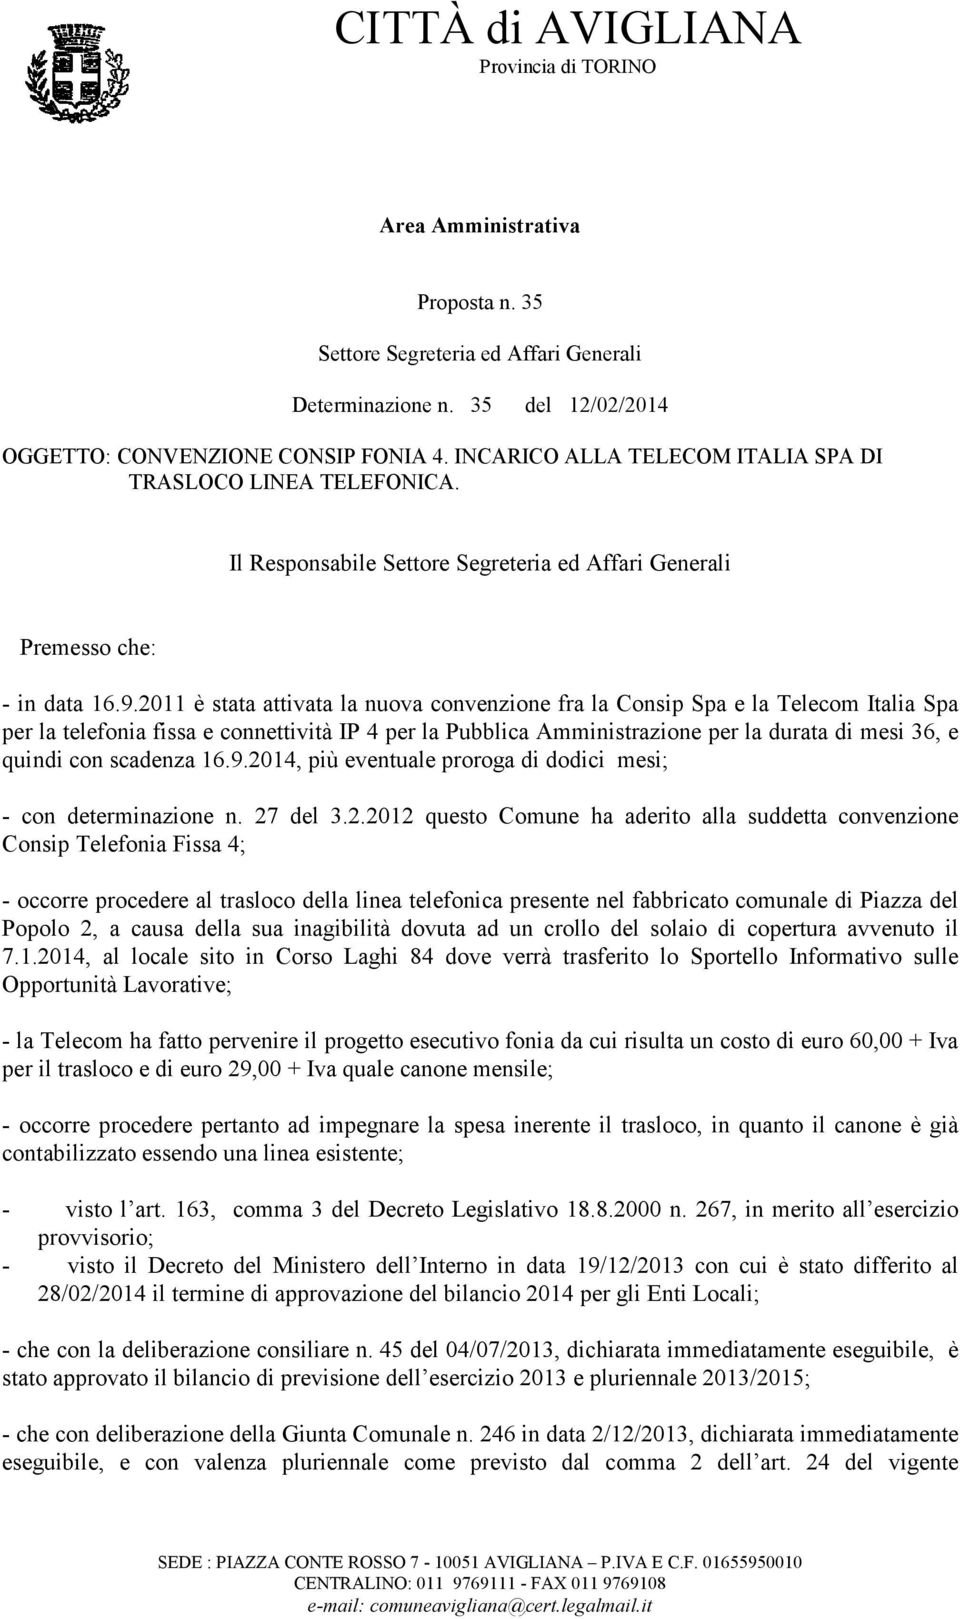 2011 è stata attivata la nuova convenzione fra la Consip Spa e la Telecom Italia Spa per la telefonia fissa e connettività IP 4 per la Pubblica Amministrazione per la durata di mesi 36, e quindi con